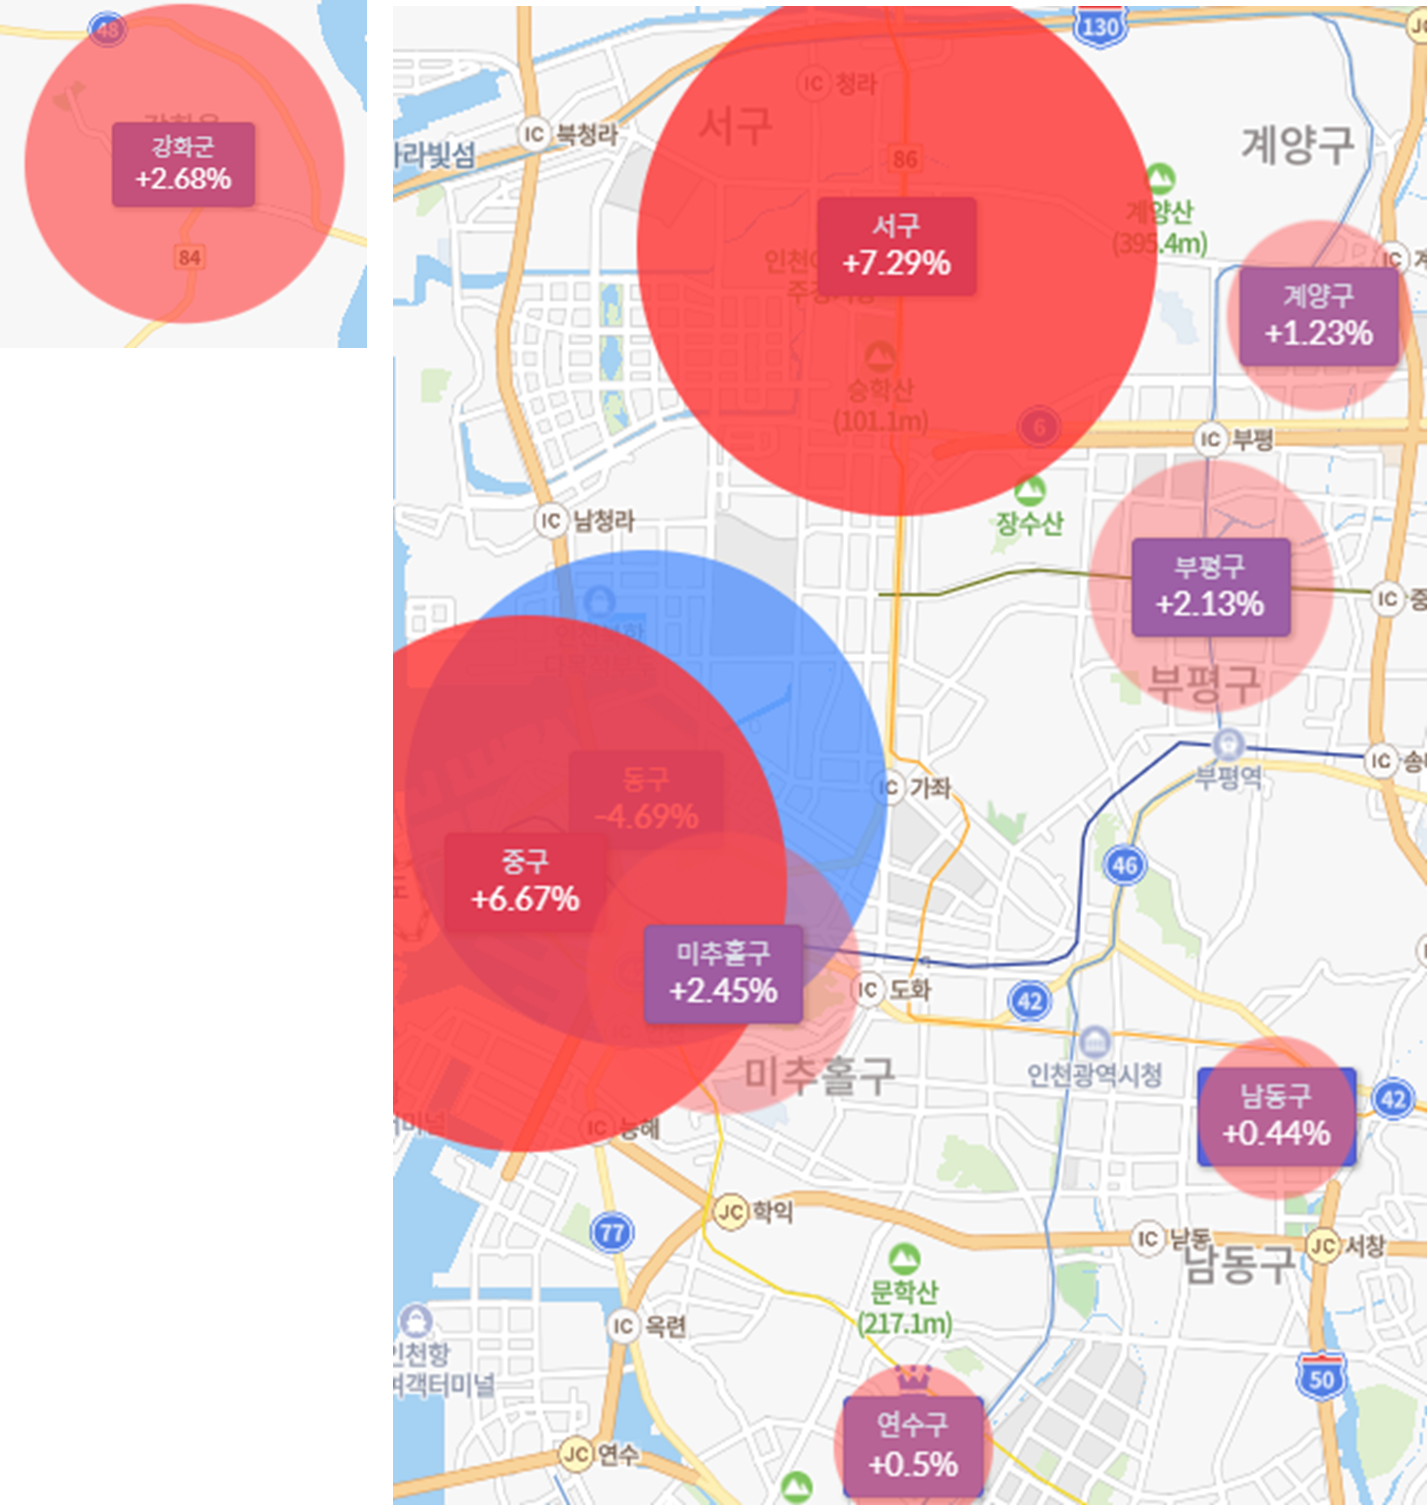 인천광역시 인구